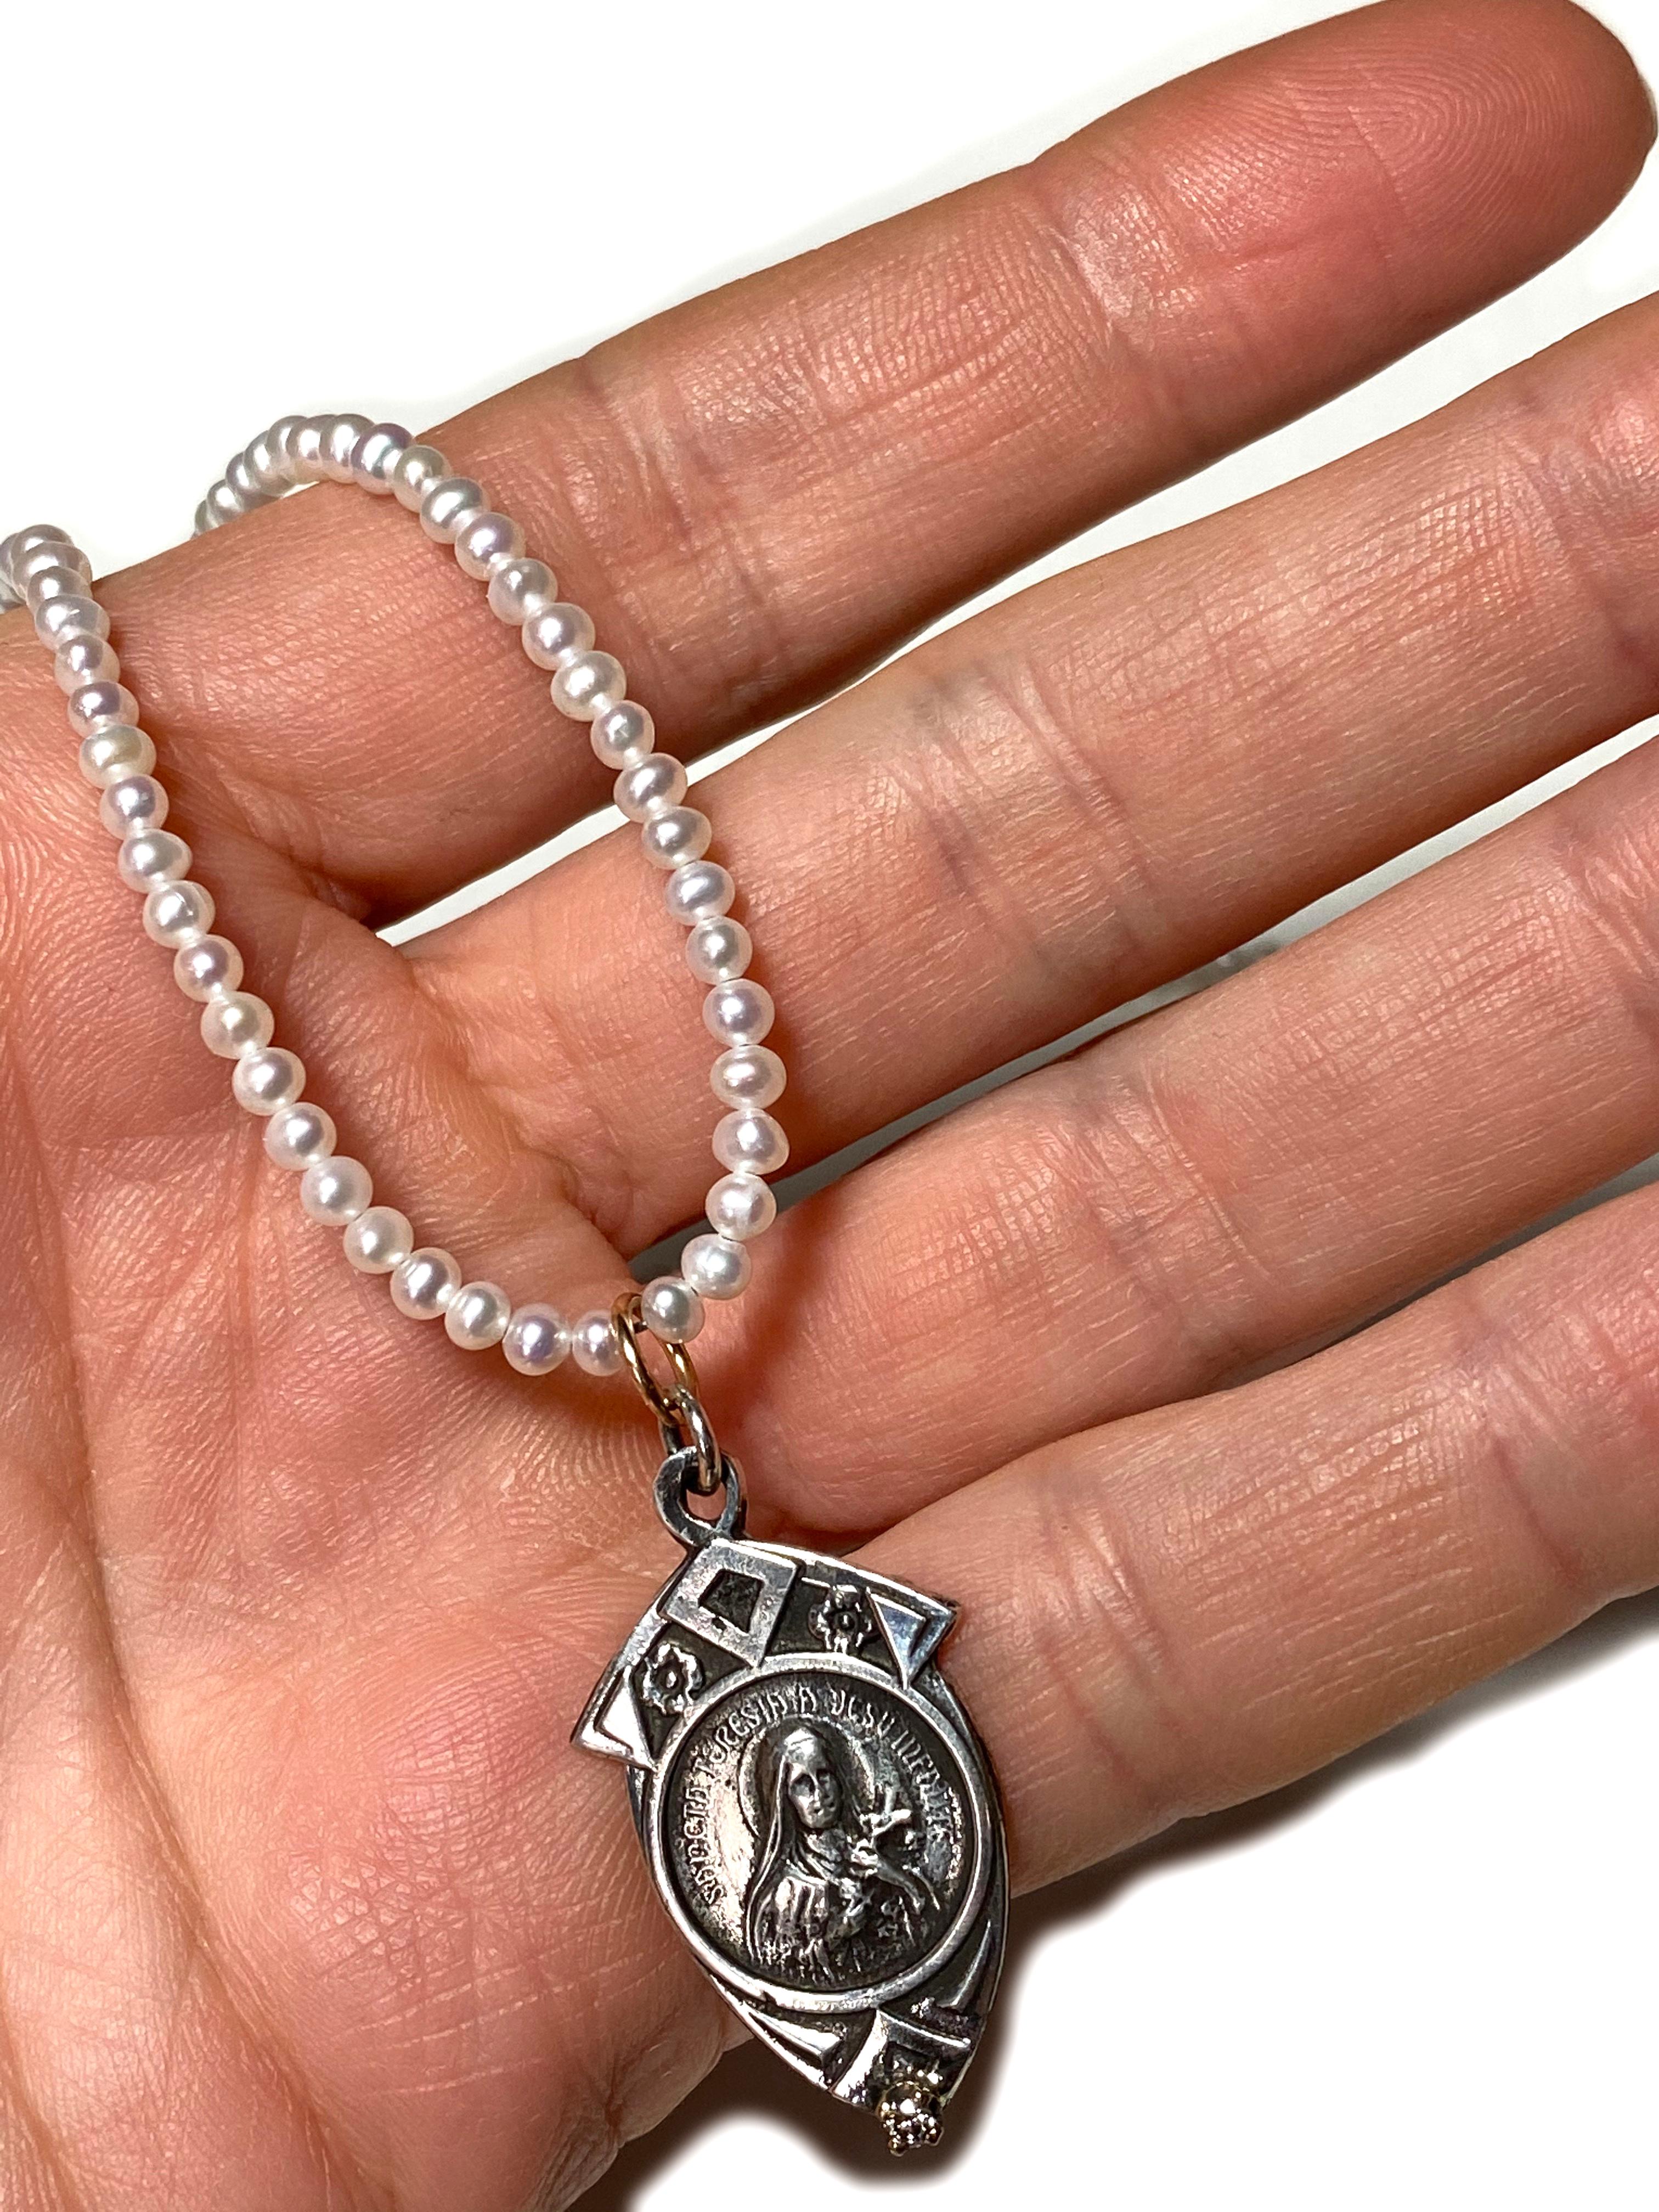 Weiße Perle Diamant Jungfrau Maria Perlenkette J Dauphin

Exklusives Stück mit einem Anhänger der Jungfrau Maria und einem weißen Diamanten, der in einer Goldzacke auf einem silbernen Medaillenanhänger gefasst ist. Die Perlenkette ist 16' lang, kann